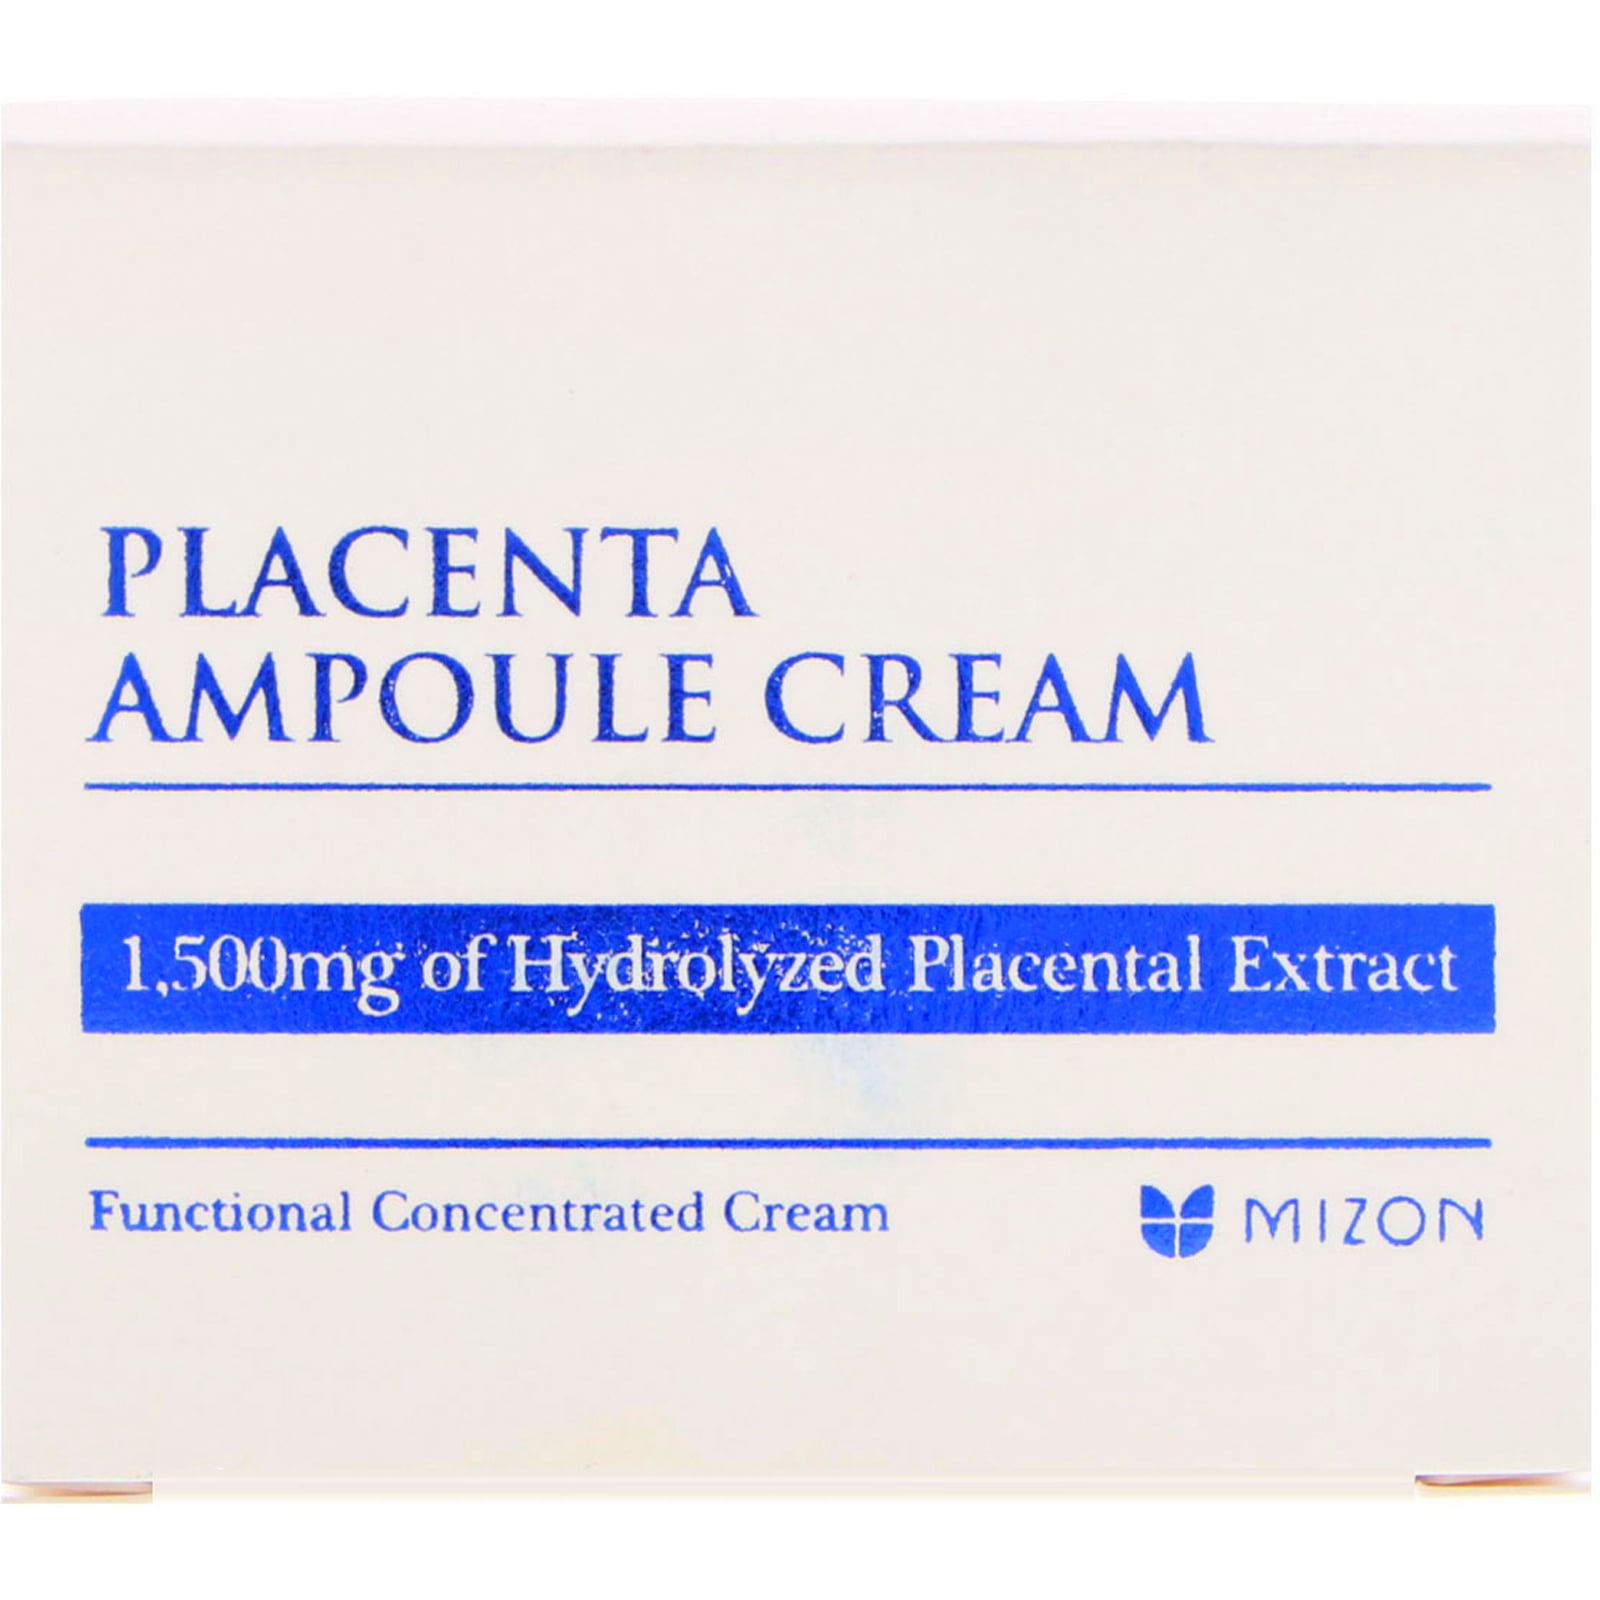 mizon placenta fiola crema 50ml nutritie albire antirid